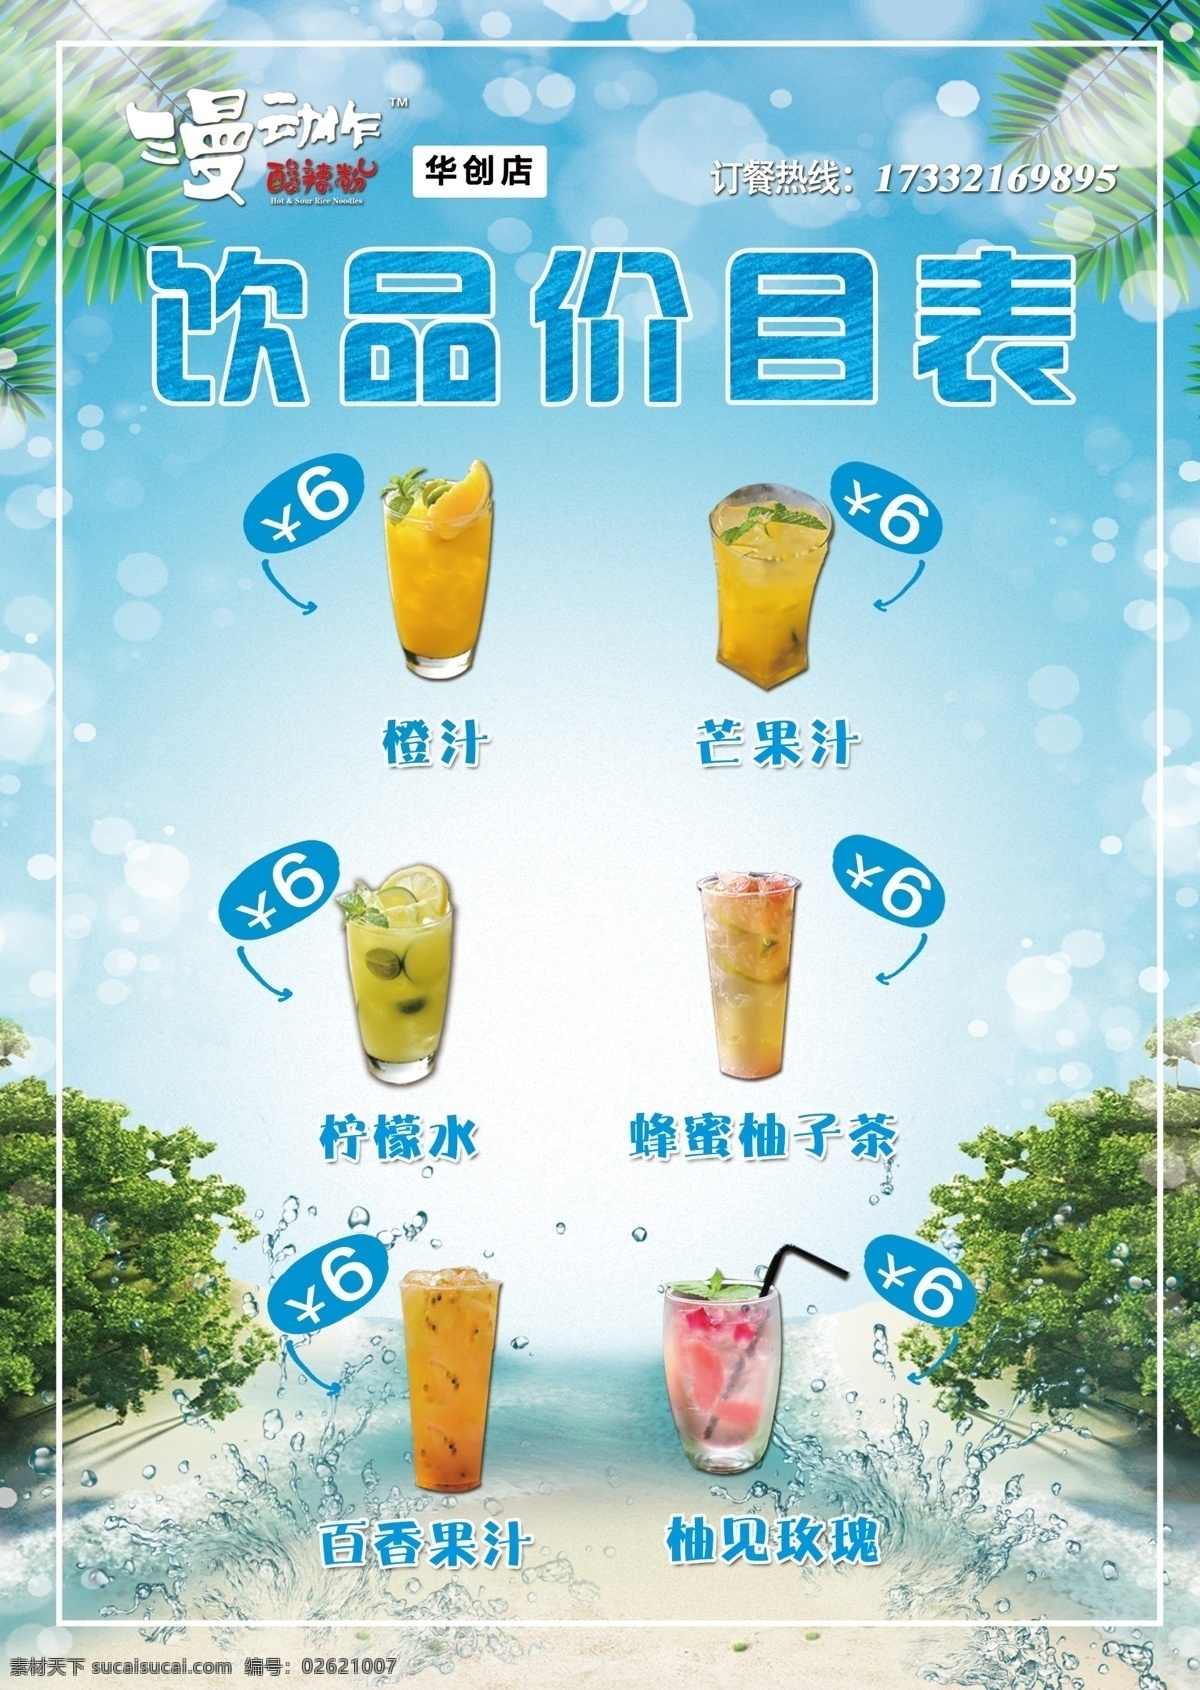 饮品价目表 饮品 价目 展板 海报 宣传 广告 饮料 菜单菜谱